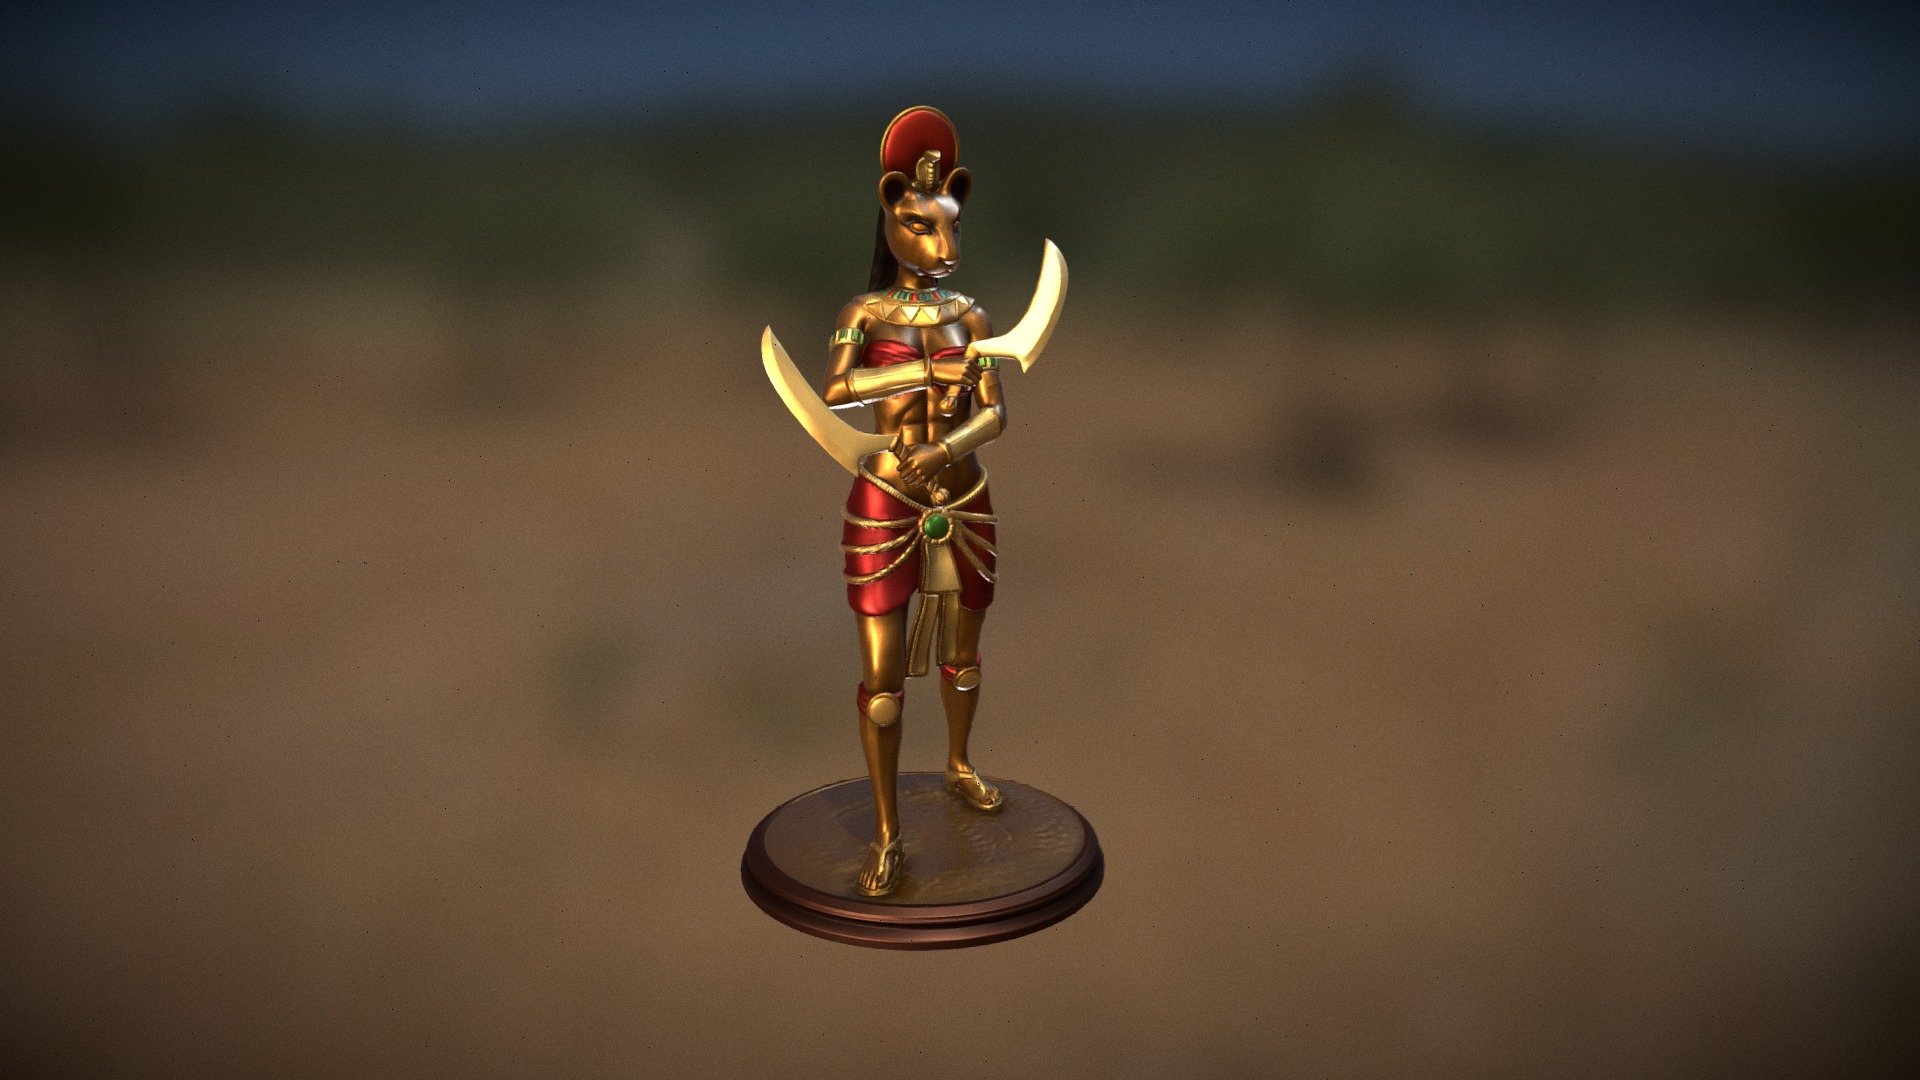 Egyptian goddess Sekhmet statue for 3d print and paint - Egyptian goddess Sekhmet 3d print and paint - Buy Royalty Free 3D model by abauerenator 3d model